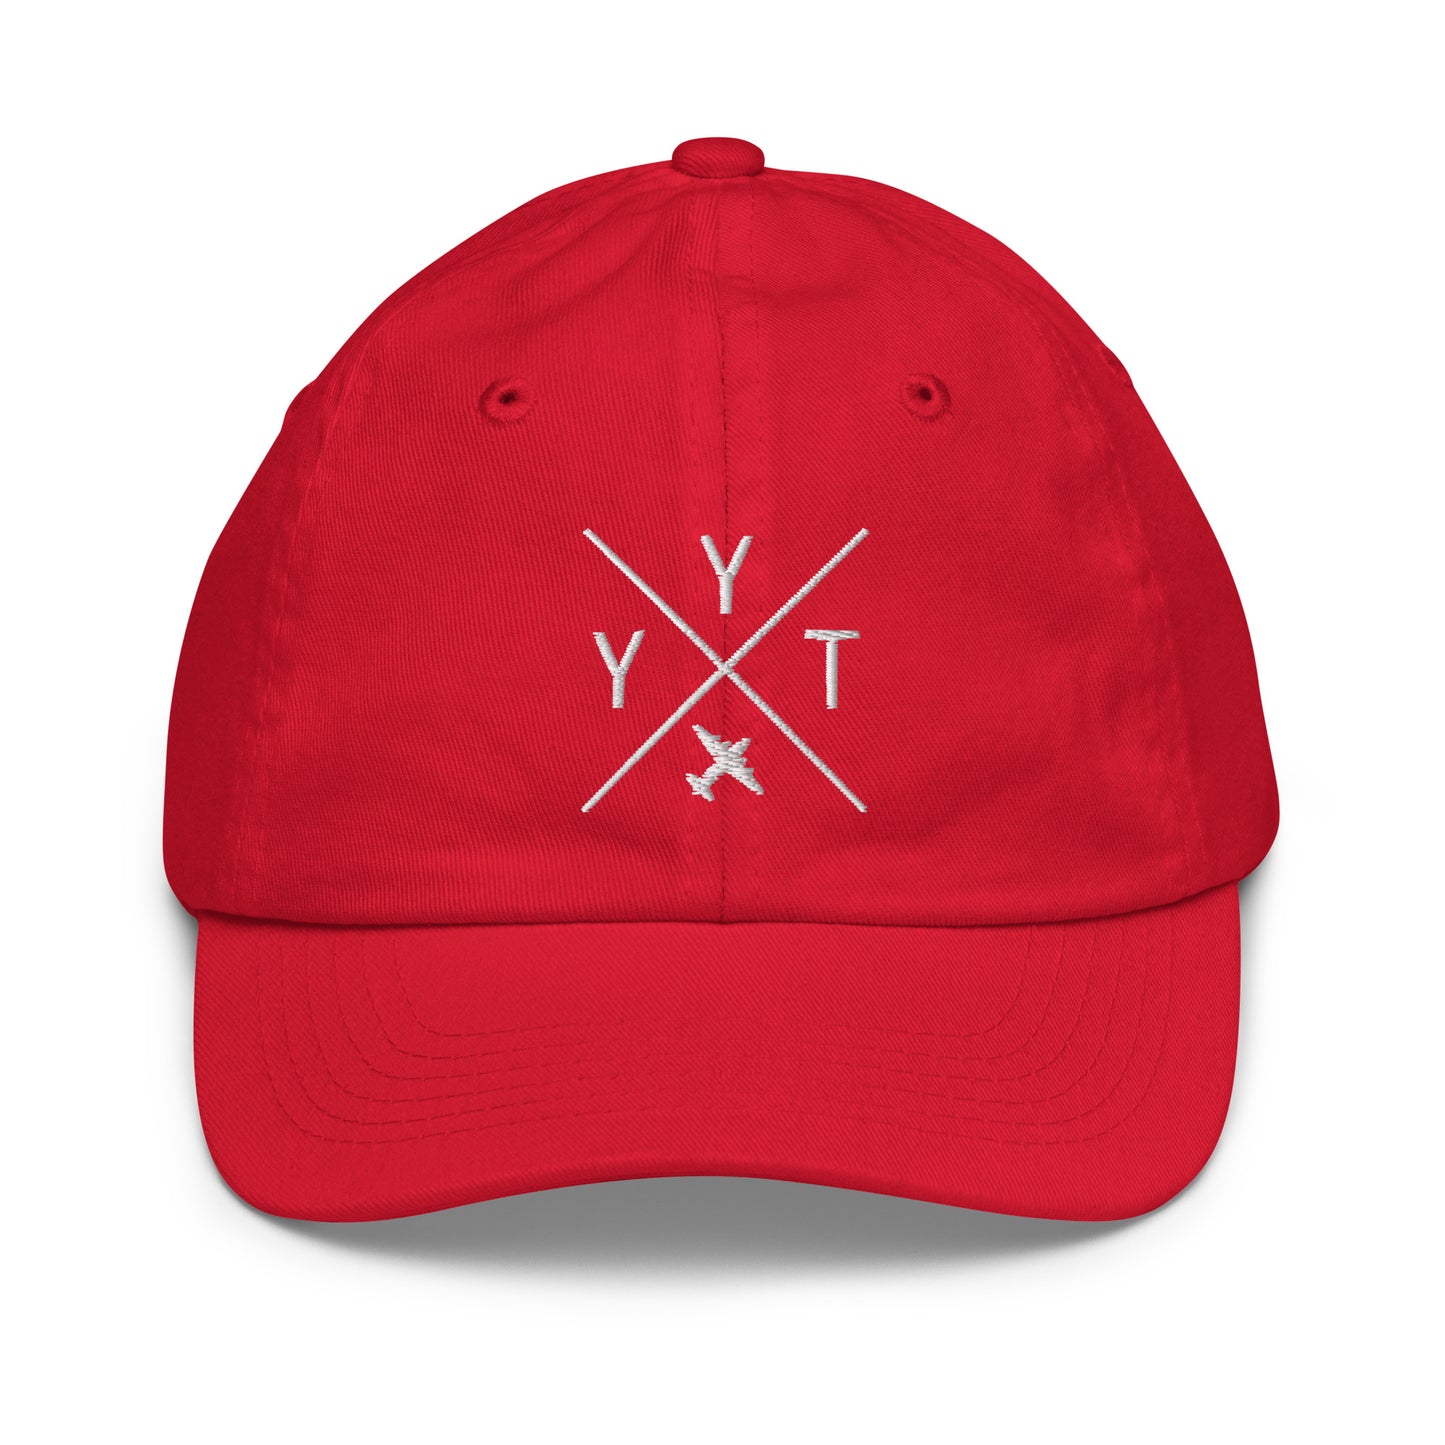 Crossed-X Kid's Baseball Cap - White • YYT St. John's • YHM Designs - Image 17